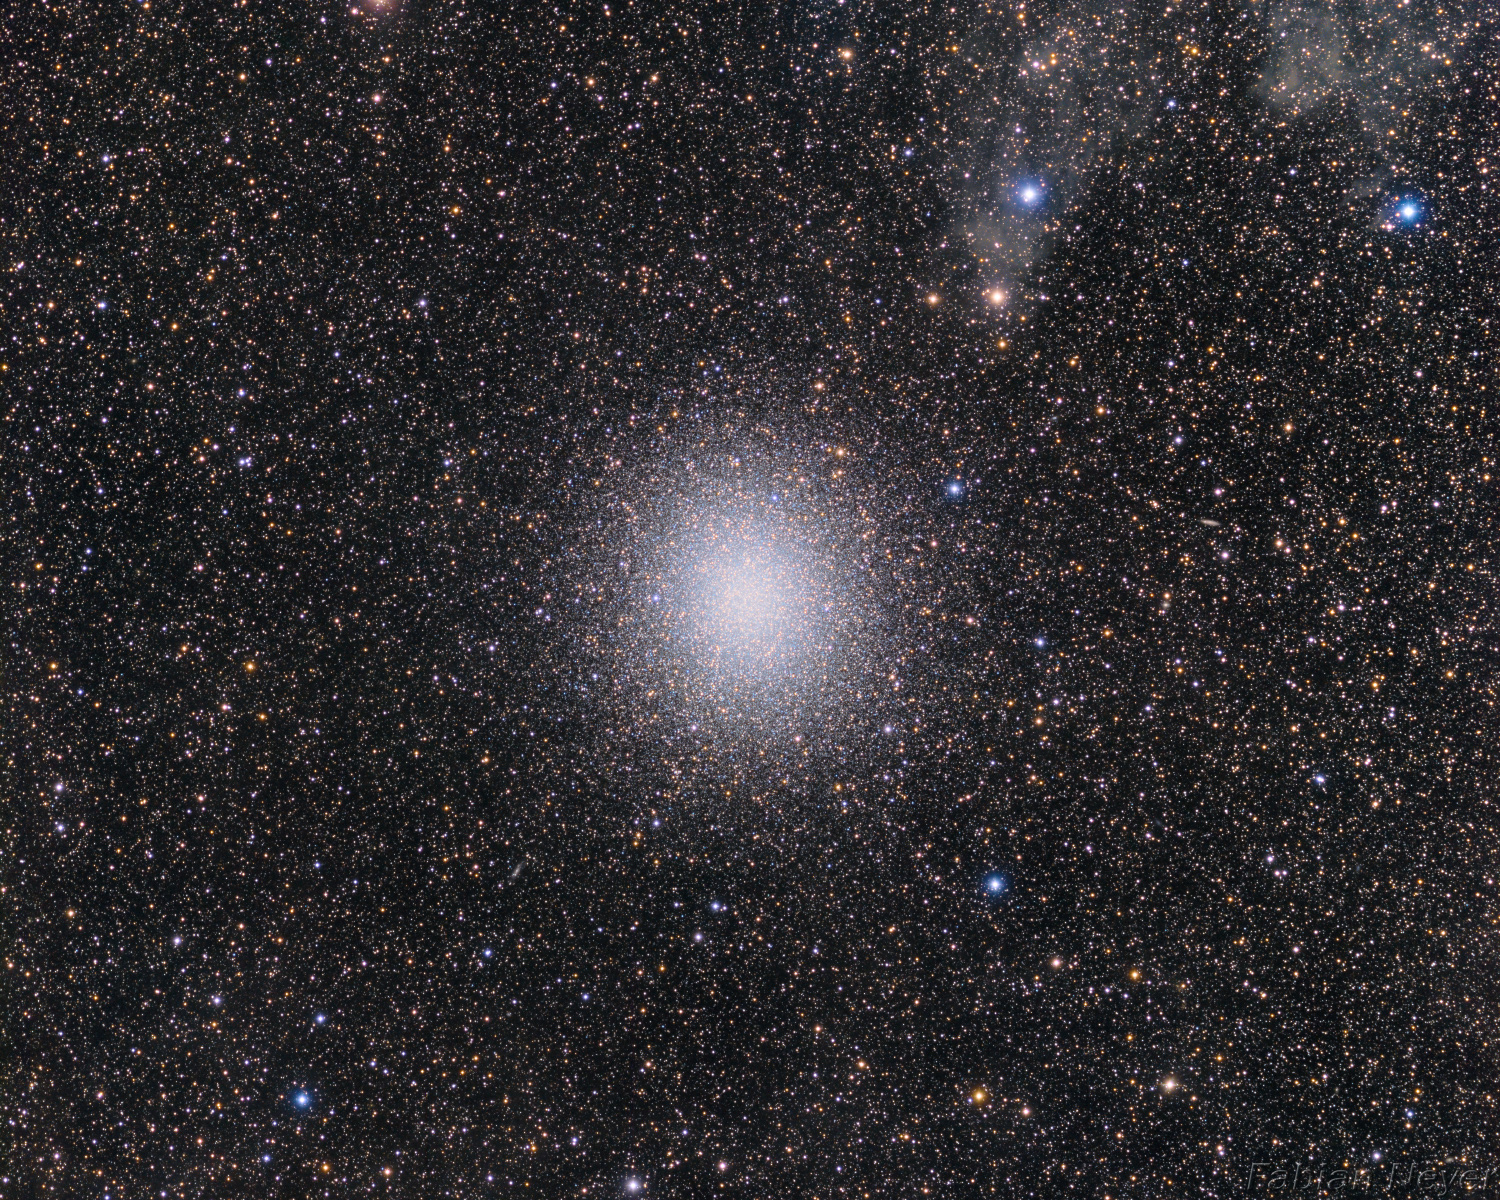 Omaga Centauri - NGC 5139